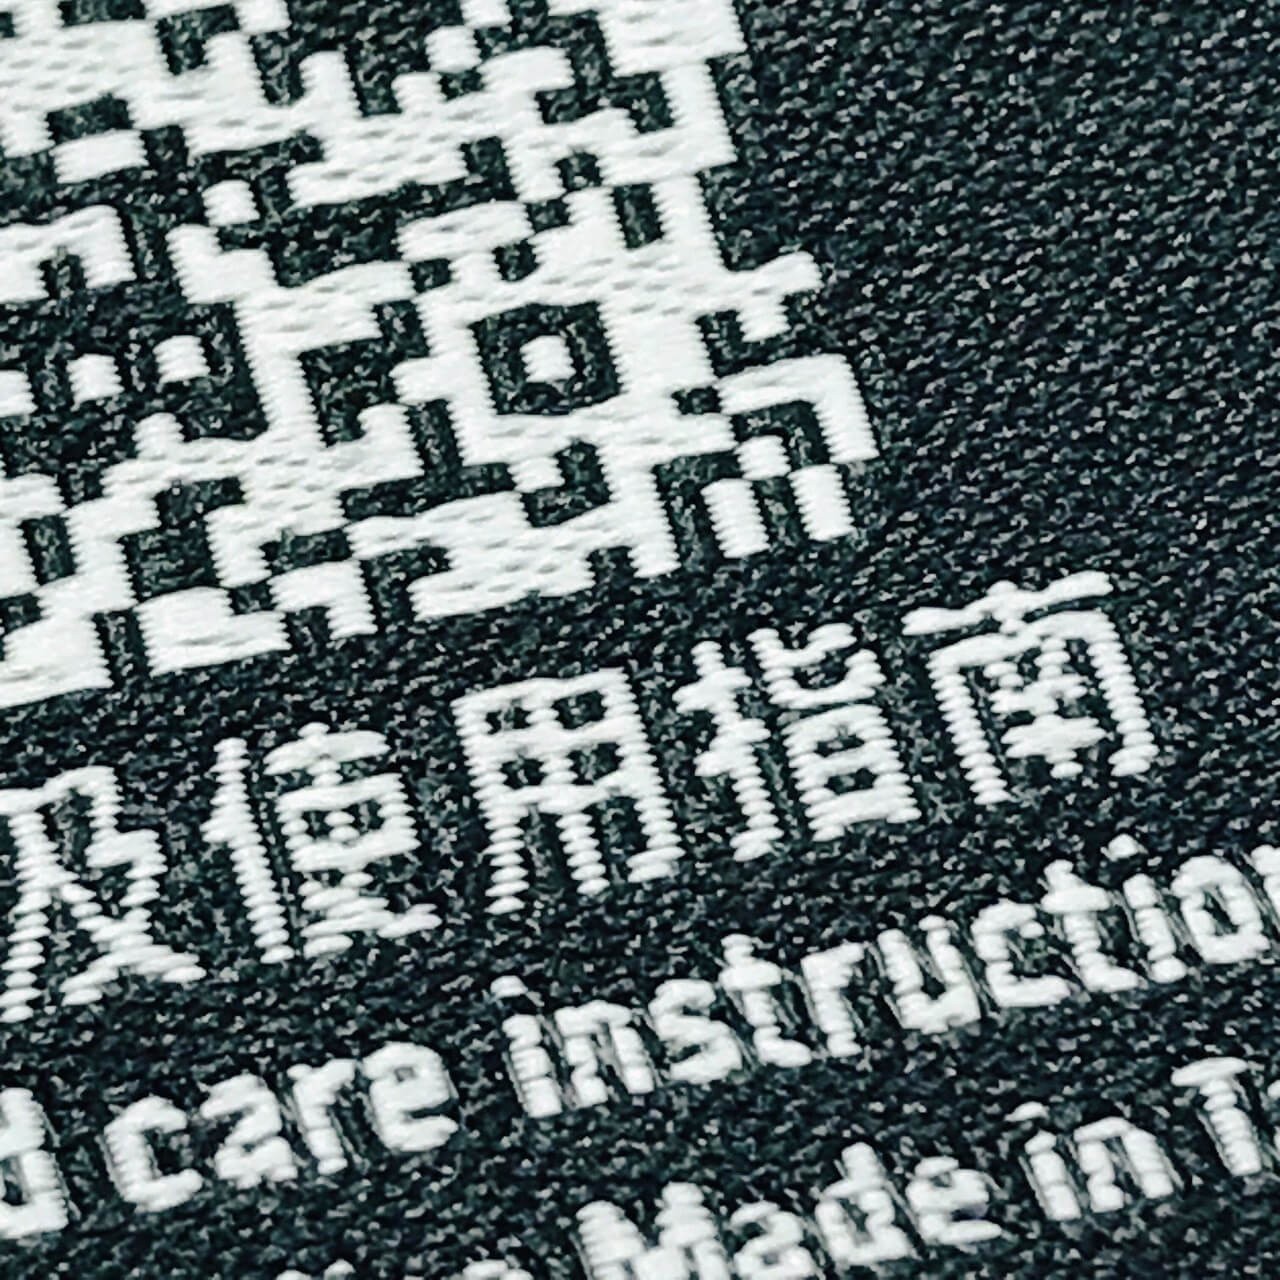 台灣客製化二維條碼QR CODE 織標